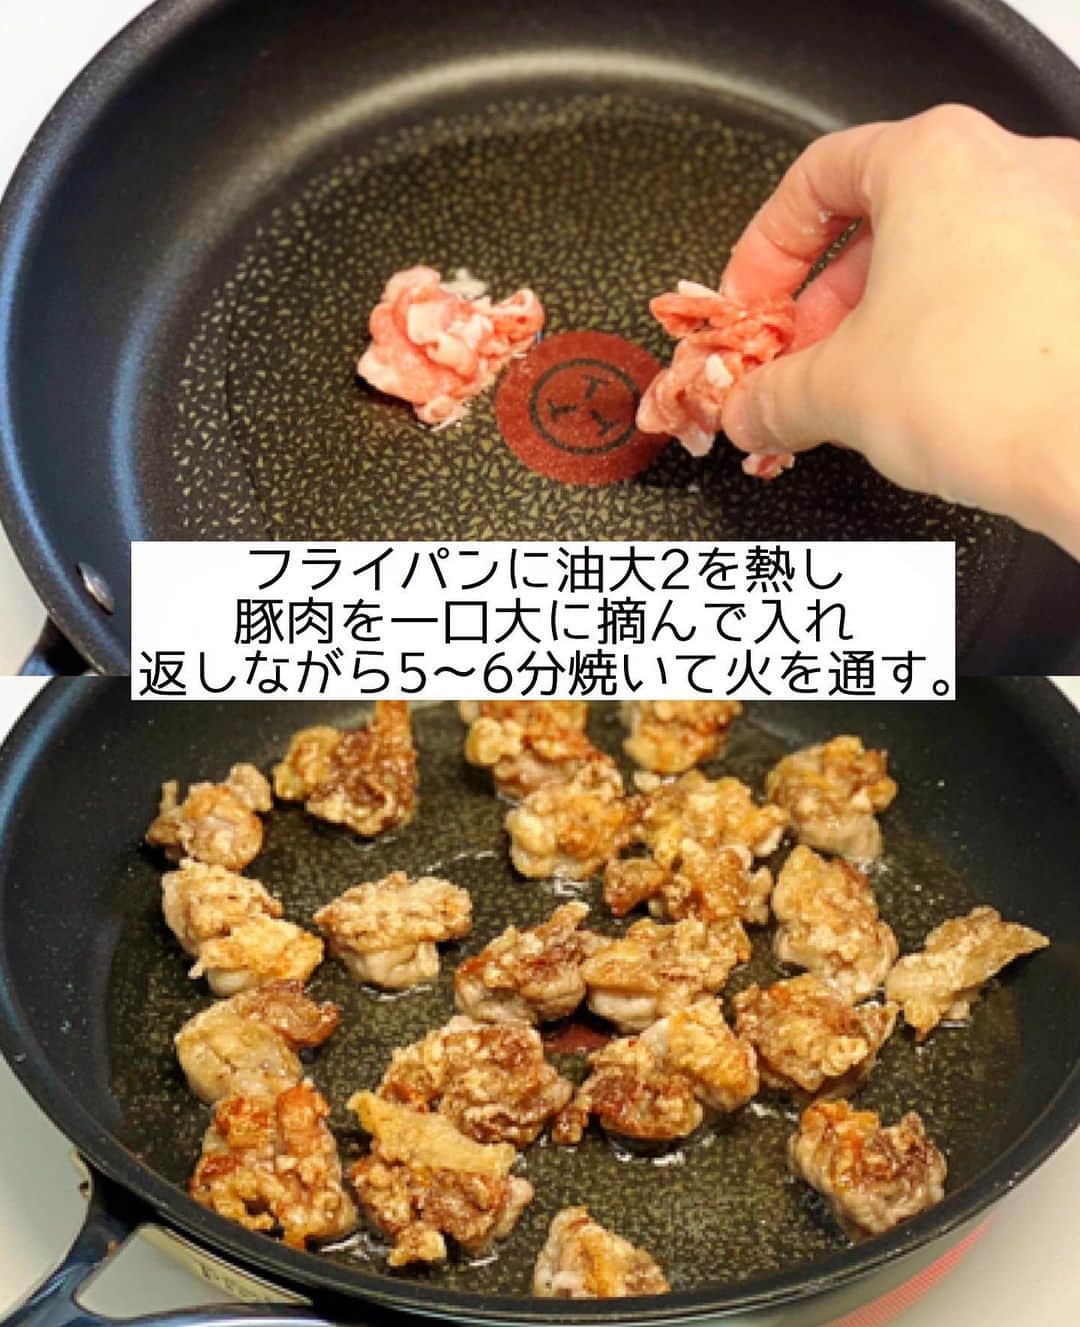 Mizuki【料理ブロガー・簡単レシピ】さんのインスタグラム写真 - (Mizuki【料理ブロガー・簡単レシピ】Instagram)「・﻿ 【#レシピ 】ーーーーーーー﻿ ♡豚こまのねぎだれがけ♡﻿ ーーーーーーーーーーーーー﻿ ﻿ ﻿ ﻿ おはようございます(*^^*)﻿ ﻿ 今日はお手軽な豚こまレシピ♩﻿ 豚肉を(適当に)摘んで焼いて﻿ ねぎだれをたっぷりかけました♡﻿ 塊肉のような食べ応えが出て﻿ 塊肉より柔らかく仕上がりますよ〜！﻿ ﻿ 豚こまボールよりうんとラクなので﻿ お気軽にお試し下さいね(*^^*)﻿ ﻿ ﻿ ﻿ ＿＿＿＿＿＿＿＿＿＿＿＿＿＿＿＿＿＿＿＿﻿ 【2人分】﻿ 豚こま切れ肉...200g﻿ 塩こしょう...少々﻿ 片栗粉...大2﻿ ●長ねぎ(みじん切り)...10cm﻿ ●生姜(みじん切り)...1/2かけ﻿ ●醤油・酢...各大1.5﻿ ●砂糖...大1﻿ ●ごま油...小1﻿ サラダ油...大2﻿ レタス...適量﻿ ﻿ 1.●を混ぜ合わせてねぎだれを作る。豚肉に塩こしょうと片栗粉をまぶす。﻿ 2.フライパンにサラダ油を中火で熱し、豚肉を一口大に摘んで入れ、返しながら5〜6分焼いて火を通す。﻿ 3.器にレタスを敷いて2をのせ、ねぎだれをかける。﻿ ￣￣￣￣￣￣￣￣￣￣￣￣￣￣￣￣￣￣￣￣﻿ ﻿ ﻿ ﻿ 《ポイント》﻿ ♦︎豚肉は摘んでなんとなくまとめればOK♩豚こまボールのように形を整える必要はありません♩﻿ ♦︎焼いている間はいじらない方が形が崩れません♩﻿ ﻿ ﻿ ﻿ ﻿ ﻿ ﻿ ﻿ ﻿ ﻿ ⭐️発売中⭐️3刷重版が決まりました😭﻿ 本当にありがとうございます(涙)﻿ _____________________________________﻿ \15分でいただきます/﻿ 📕#Mizukiの2品献立 📕﻿ (9月24日発売・マガジンハウス)﻿ ￣￣￣￣￣￣￣￣￣￣￣￣￣￣￣￣￣﻿ ﻿ 忙しい私たちには﻿ 2品くらいがちょうどいい！﻿ 『しんどくない献立、考えました』﻿ ￣￣￣￣￣￣￣￣￣￣￣￣￣￣￣￣﻿ ﻿ ーーーーーPART.1 ーーーーー﻿ 【Mizukiのお墨つき！２品献立ベスト10】﻿ 約15分でできる10献立をご紹介！﻿ メインは全部フライパン﻿ 副菜はレンチンor混ぜるだけ♡﻿ ﻿ ーーーーーPART.2 ーーーーー﻿ 【フライパンひとつ！今夜のメインおかず】﻿ 献立の主役になる肉や魚のおかず50品！﻿ Part3の副菜と組み合わせれば﻿ 献立のバリエーションが広がりますよ♩﻿ ﻿ ーーーーー PART.3 ーーーーー﻿ 【合間に作れる！ 野菜別かんたん副菜】﻿ レンチンor和えるだけの副菜レシピを﻿ 素材別にたっぷり収録♩﻿ ﻿ ーーーーー番外編ーーーーー﻿ 【ひとつで満足！ご飯＆麺】﻿ 【具だくさん！おかずスープ】﻿ 【オーブンいらずのおやつレシピ】﻿ ￣￣￣￣￣￣￣￣￣￣￣￣￣￣￣￣￣￣﻿ (ハイライトにリンク🔗あります💗)﻿ ﻿ ﻿ ﻿ ﻿ ﻿ ＿＿＿＿＿＿＿＿＿＿＿＿＿＿＿＿＿＿﻿ 🔔テレビ出演のお知らせ🔔﻿ 【NHK Eテレ #まる得マガジン 】﻿ 2回目の放送が始まっています✨﻿ 昼(11：55〜 月-木) ﻿ 俳優の武田航平さん﻿ (@kouhei_takeda.official )と一緒に﻿ 絶品おやつから意外なランチまで﻿ たくさん作らせていただきますよ♩﻿ ﻿ ＊NHKテキスト発売中↓📕﻿ 【ホットケーキミックスで﻿ 絶品おやつ&意外なランチ】﻿ ￣￣￣￣￣￣￣￣￣￣￣￣￣￣￣￣￣￣﻿ ﻿ ﻿ ﻿ ﻿ ﻿ ＿＿＿＿＿＿＿＿＿＿＿＿＿＿＿＿＿＿﻿ レシピを作って下さった際や﻿ レシピ本についてのご投稿には﻿ タグ付け( @mizuki_31cafe )して﻿ お知らせいただけると嬉しいです😊💕﻿ ￣￣￣￣￣￣￣￣￣￣￣￣￣￣￣￣￣￣﻿ ﻿ ﻿ ﻿ ﻿ #豚こま#豚肉#ねぎだれ#豚こまボール#Mizuki#簡単レシピ#時短レシピ#節約レシピ#料理#フーディーテーブル#マカロニメイト#おうちごはん#デリスタグラマー#料理好きな人と繋がりたい#食べ物#料理記録#おうちごはんlover#写真好きな人と繋がりたい#foodpic#cooking#recipe#lin_stagrammer#foodporn#yummy#f52grams#豚こまのねぎだれがけm」12月7日 7時05分 - mizuki_31cafe